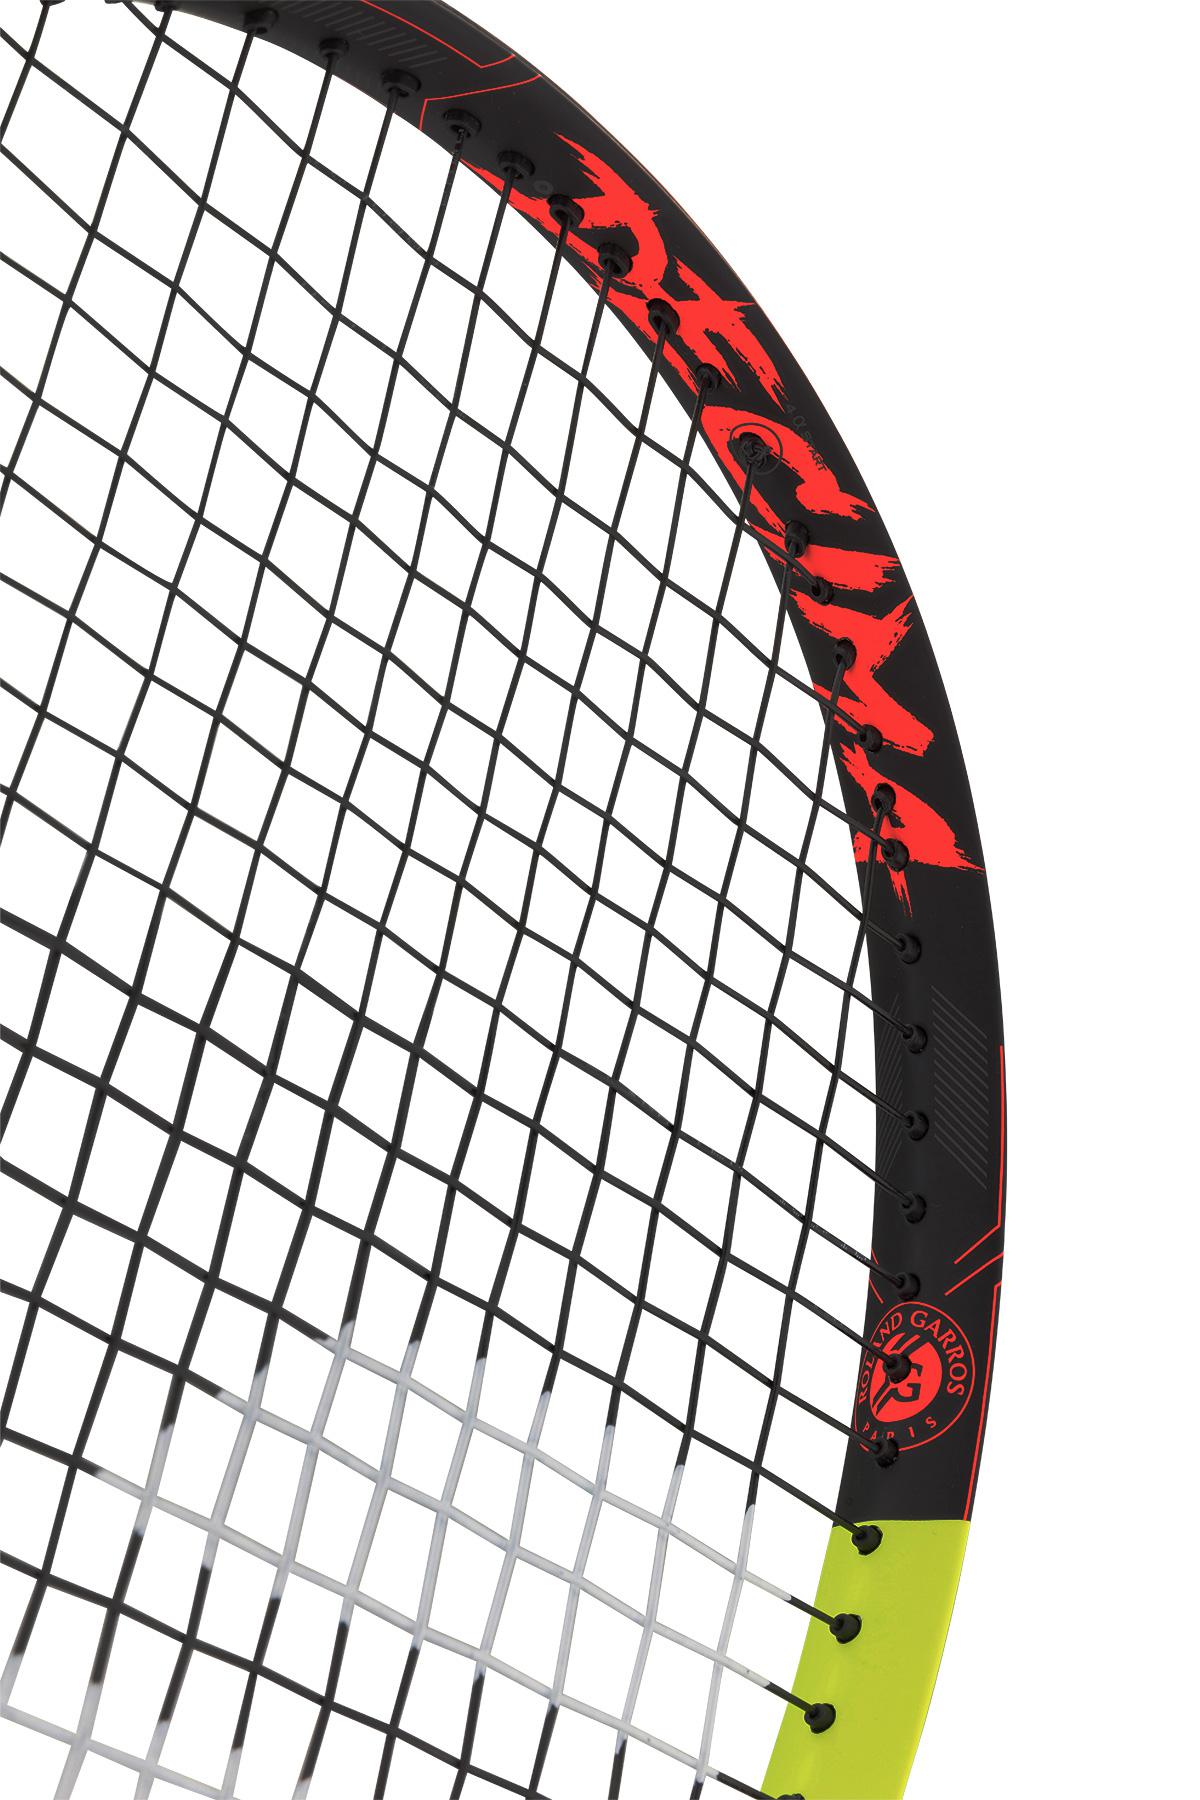 Babolat Pure Aero Decima Tennis Racket - Tennisnuts.com